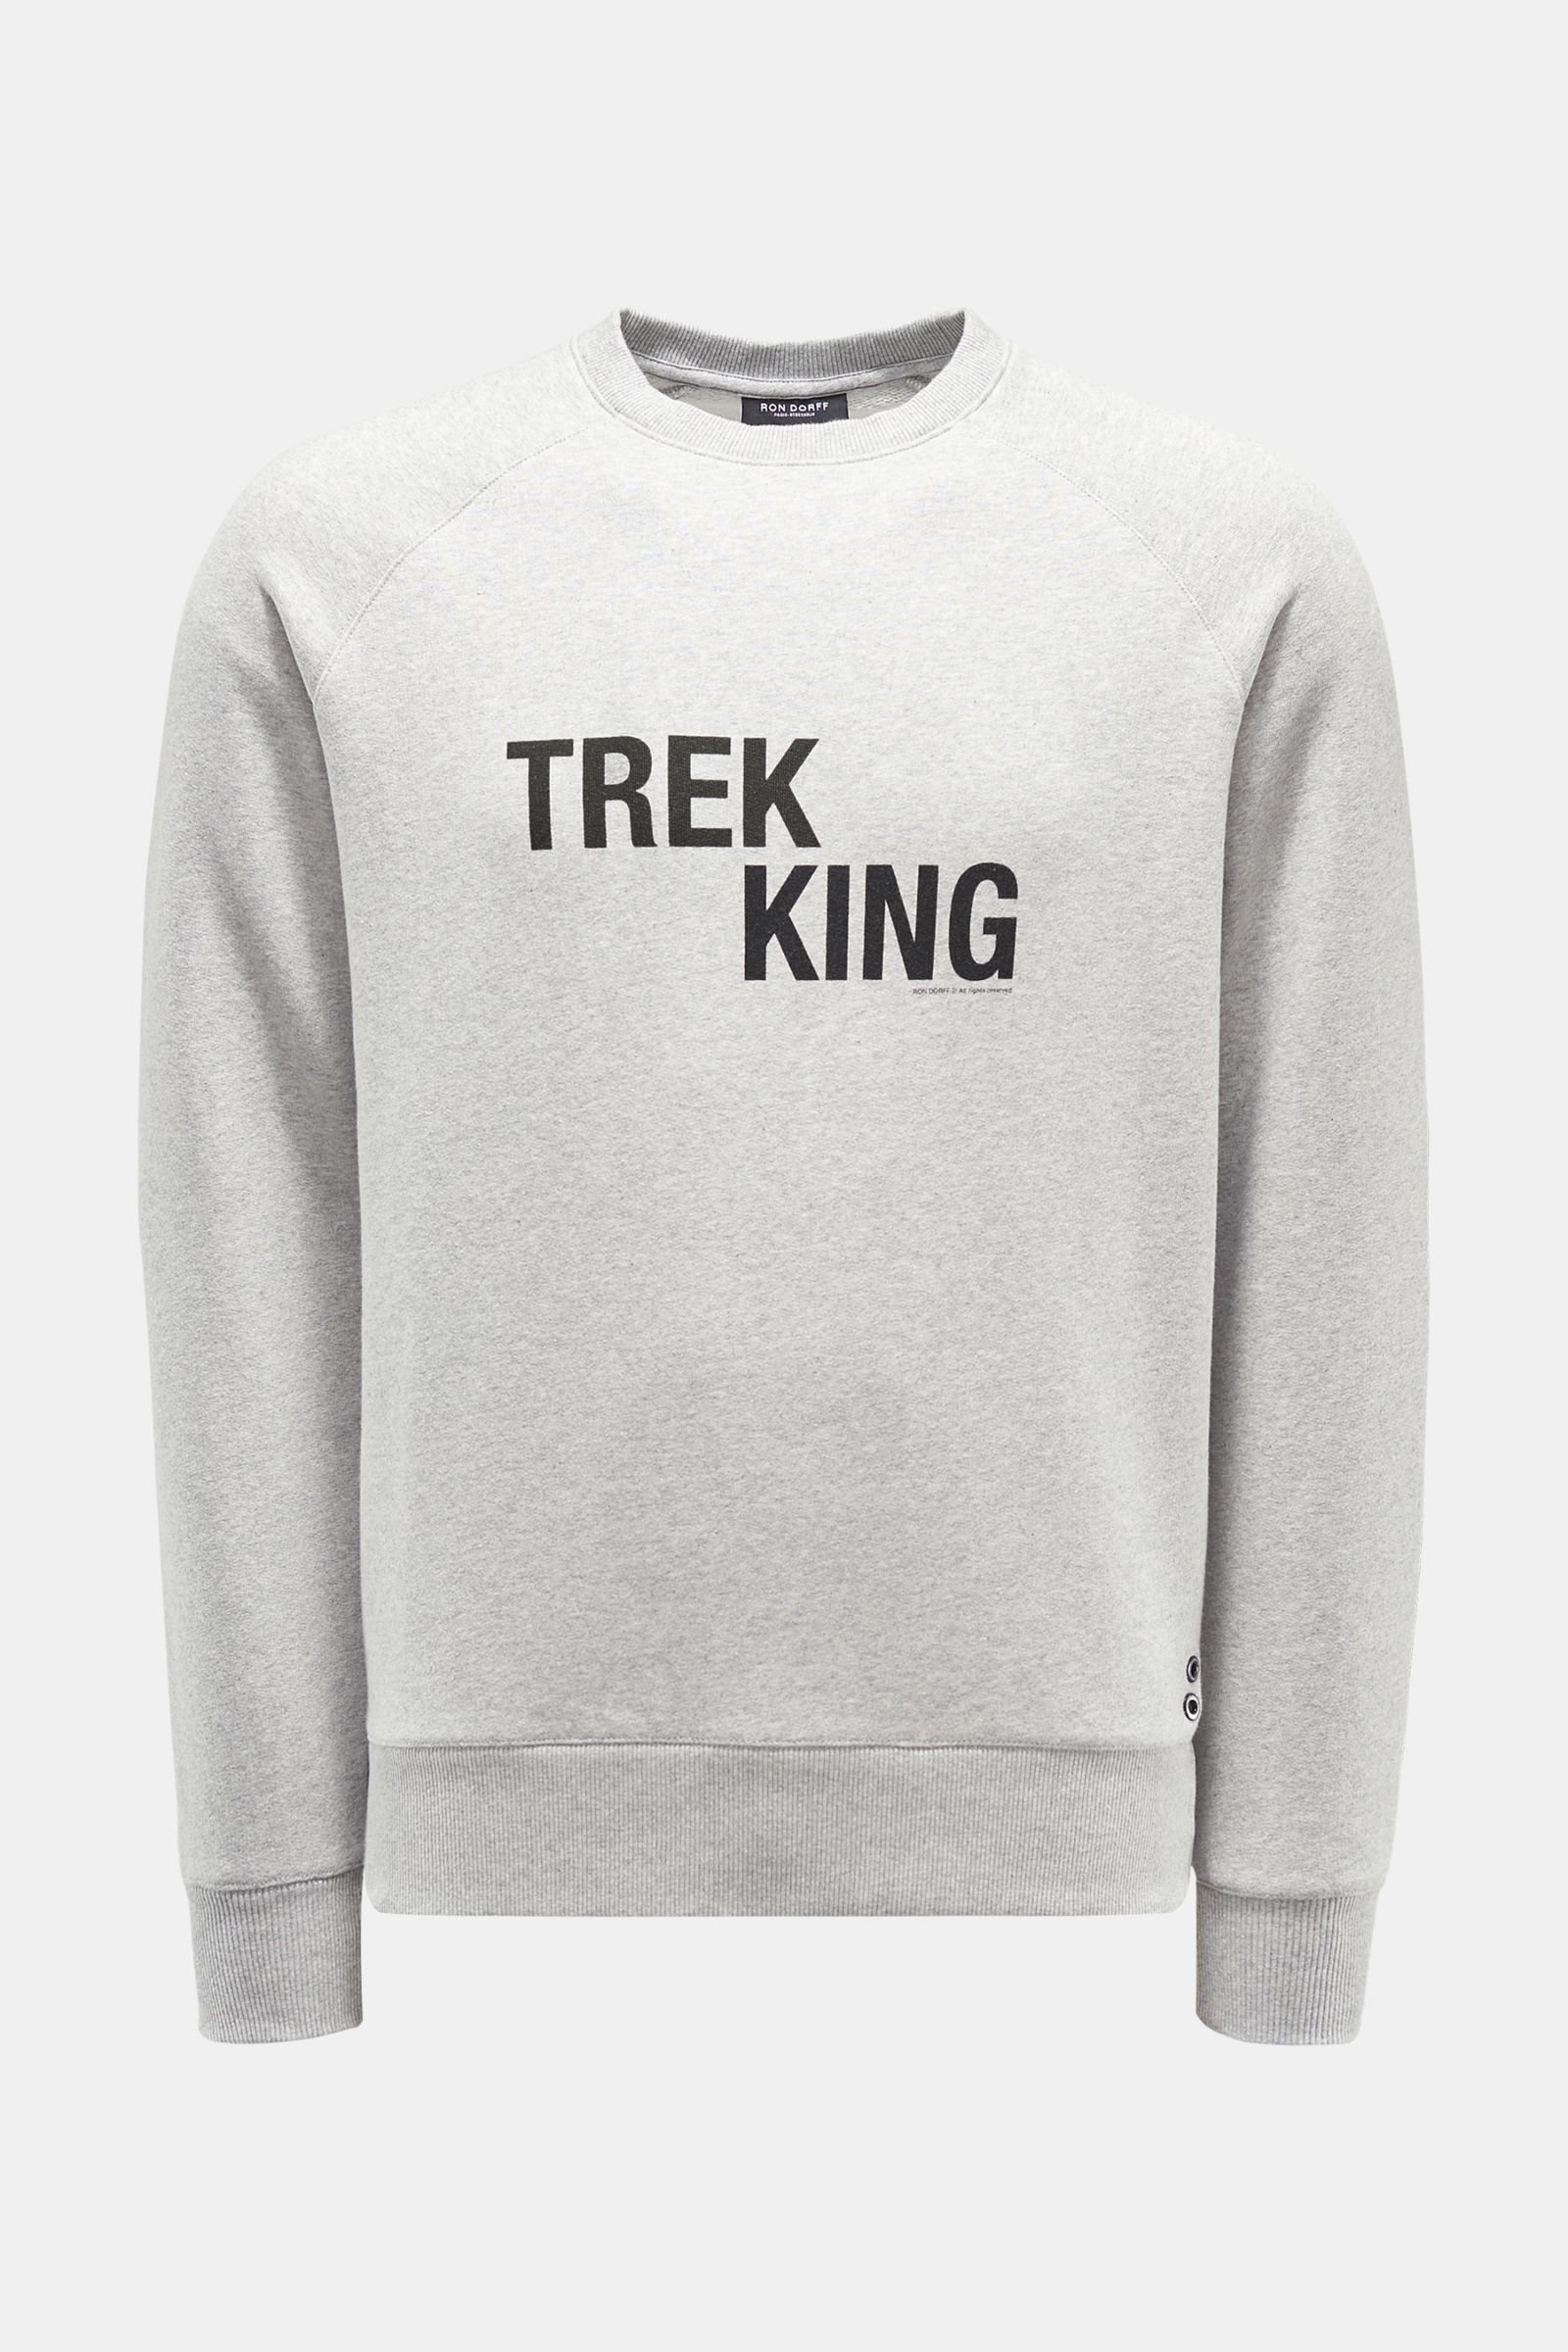 Crew neck sweatshirt 'Trek King' light grey